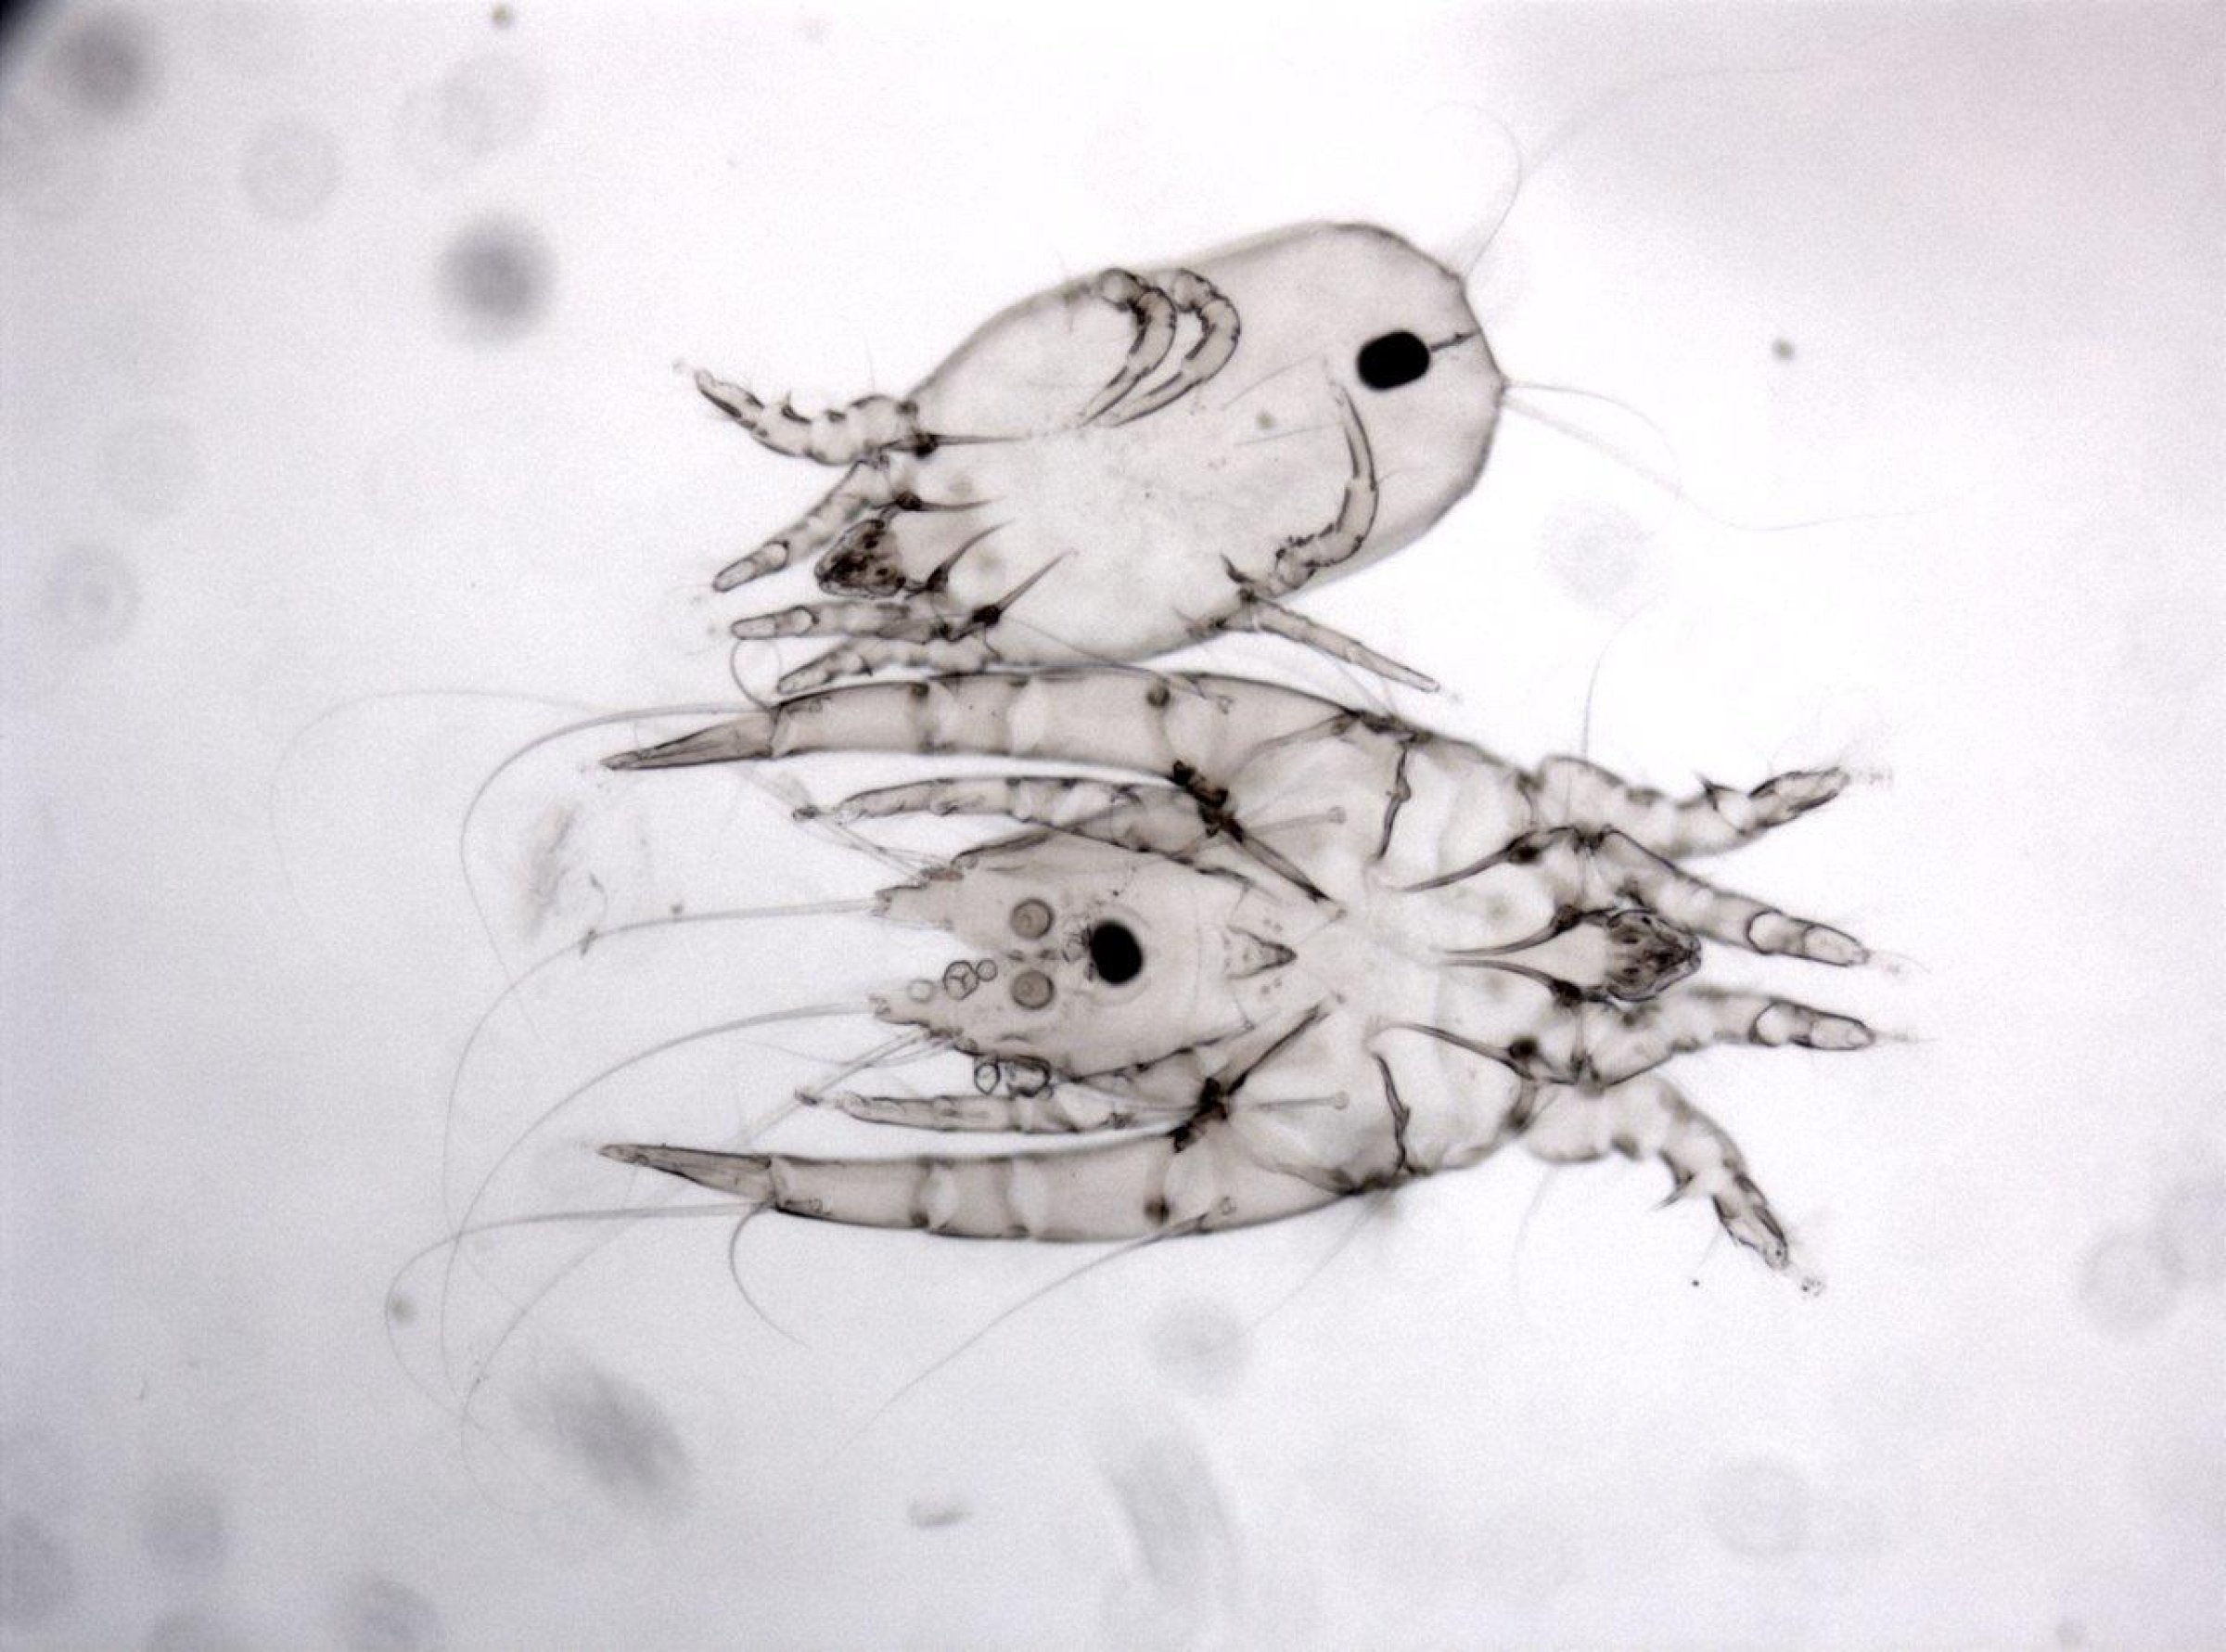 Lysmikroskopibilde av fjærmidden Megninia spp. Bildet viser en hunn (øverst) og en hann (nederst) i 100 x forstørrelse. Foto: Inger Sofie Hamnes